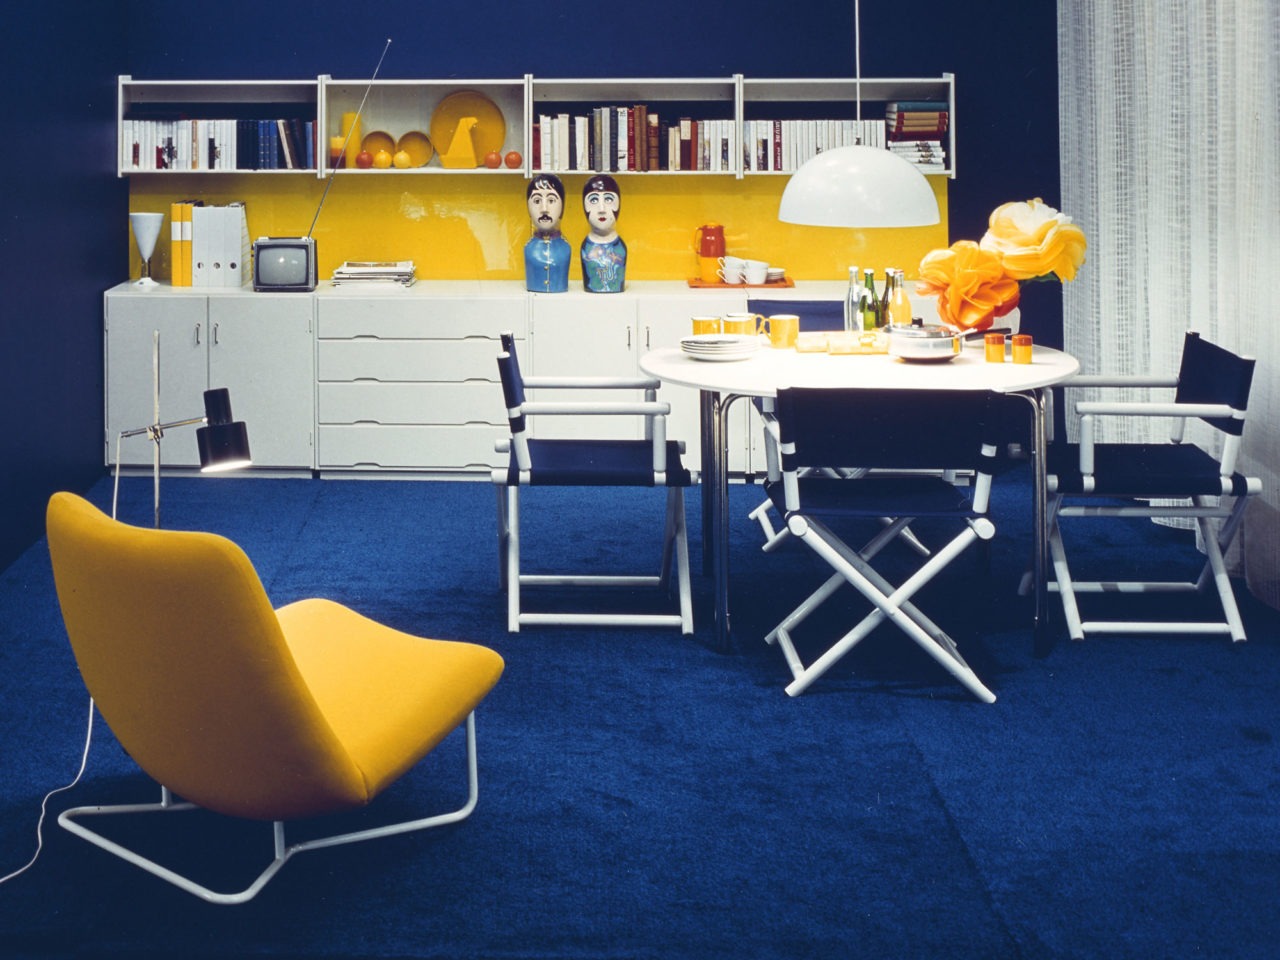 Pièce bleu, blanc, jaune. Meubles blancs, fauteuils de régisseur autour d’une table, chaise de repos banane, tapis bleu.